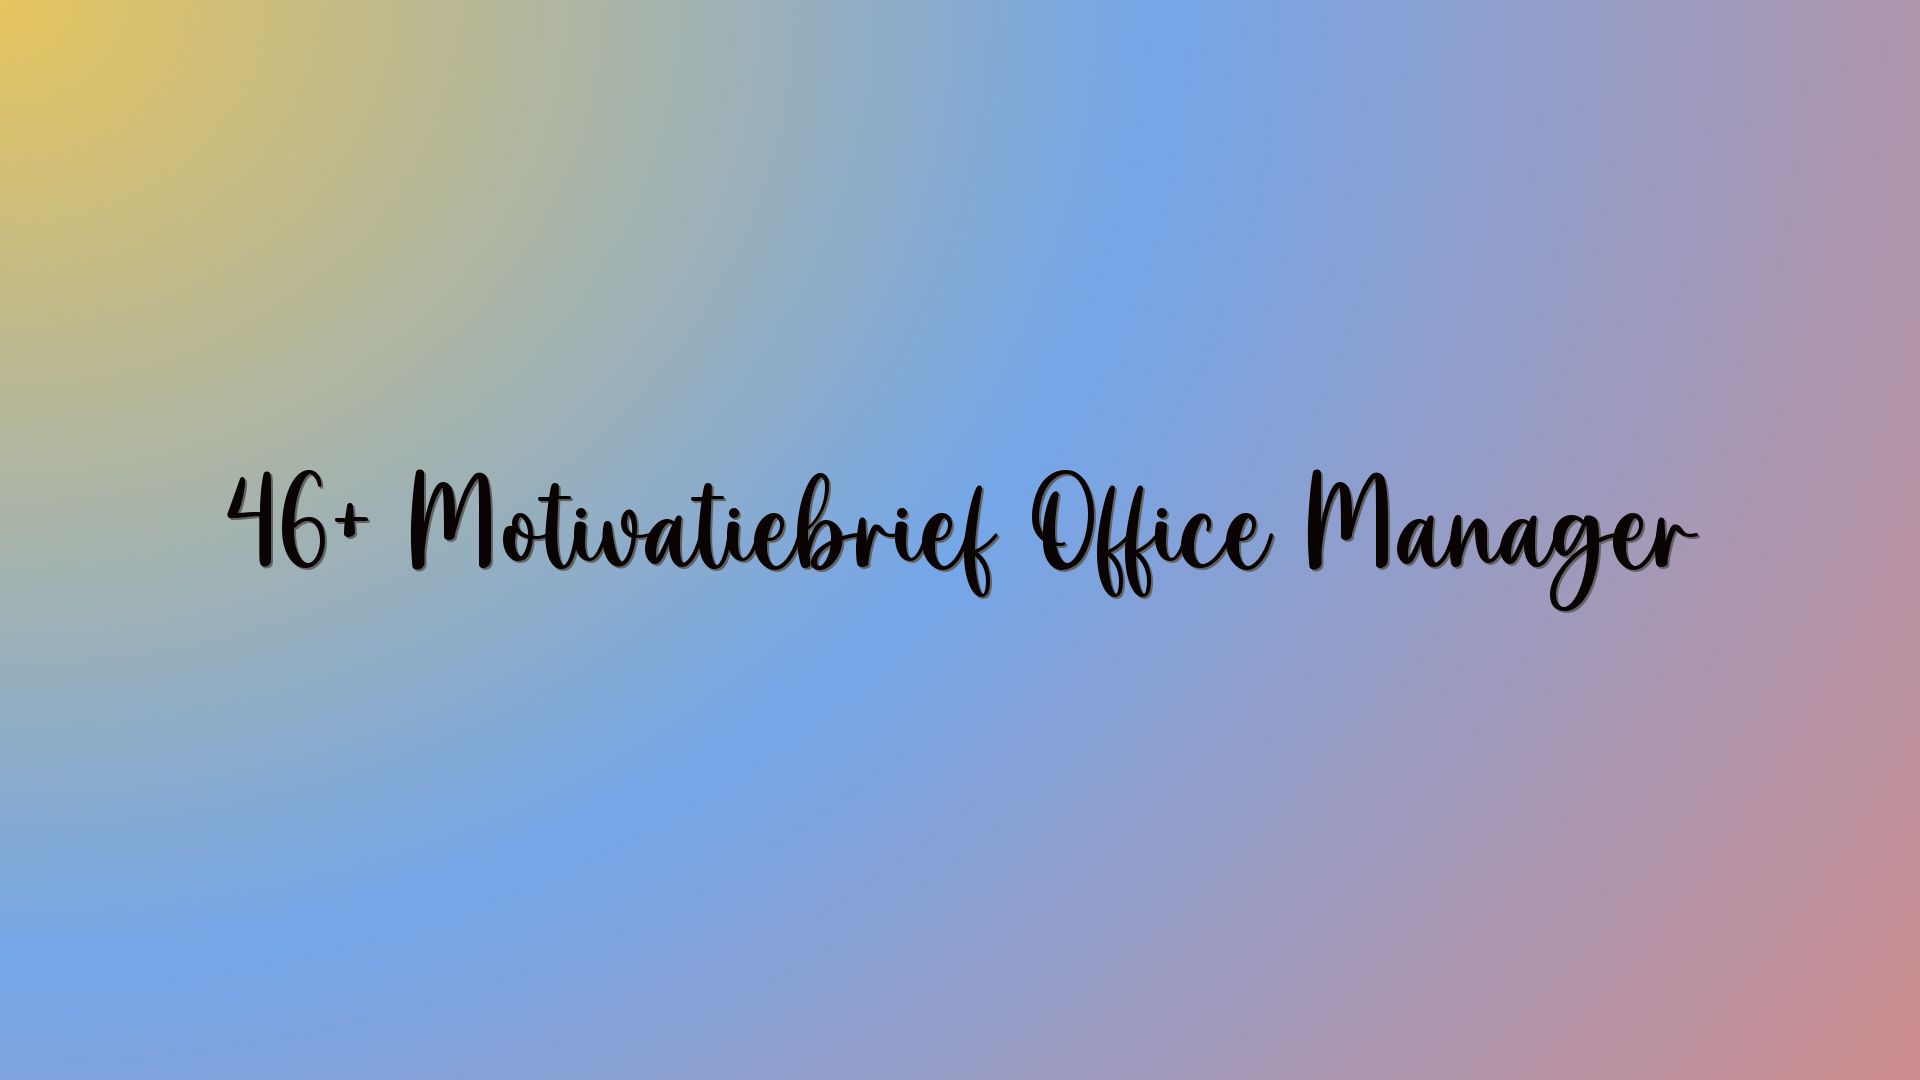 46+ Motivatiebrief Office Manager